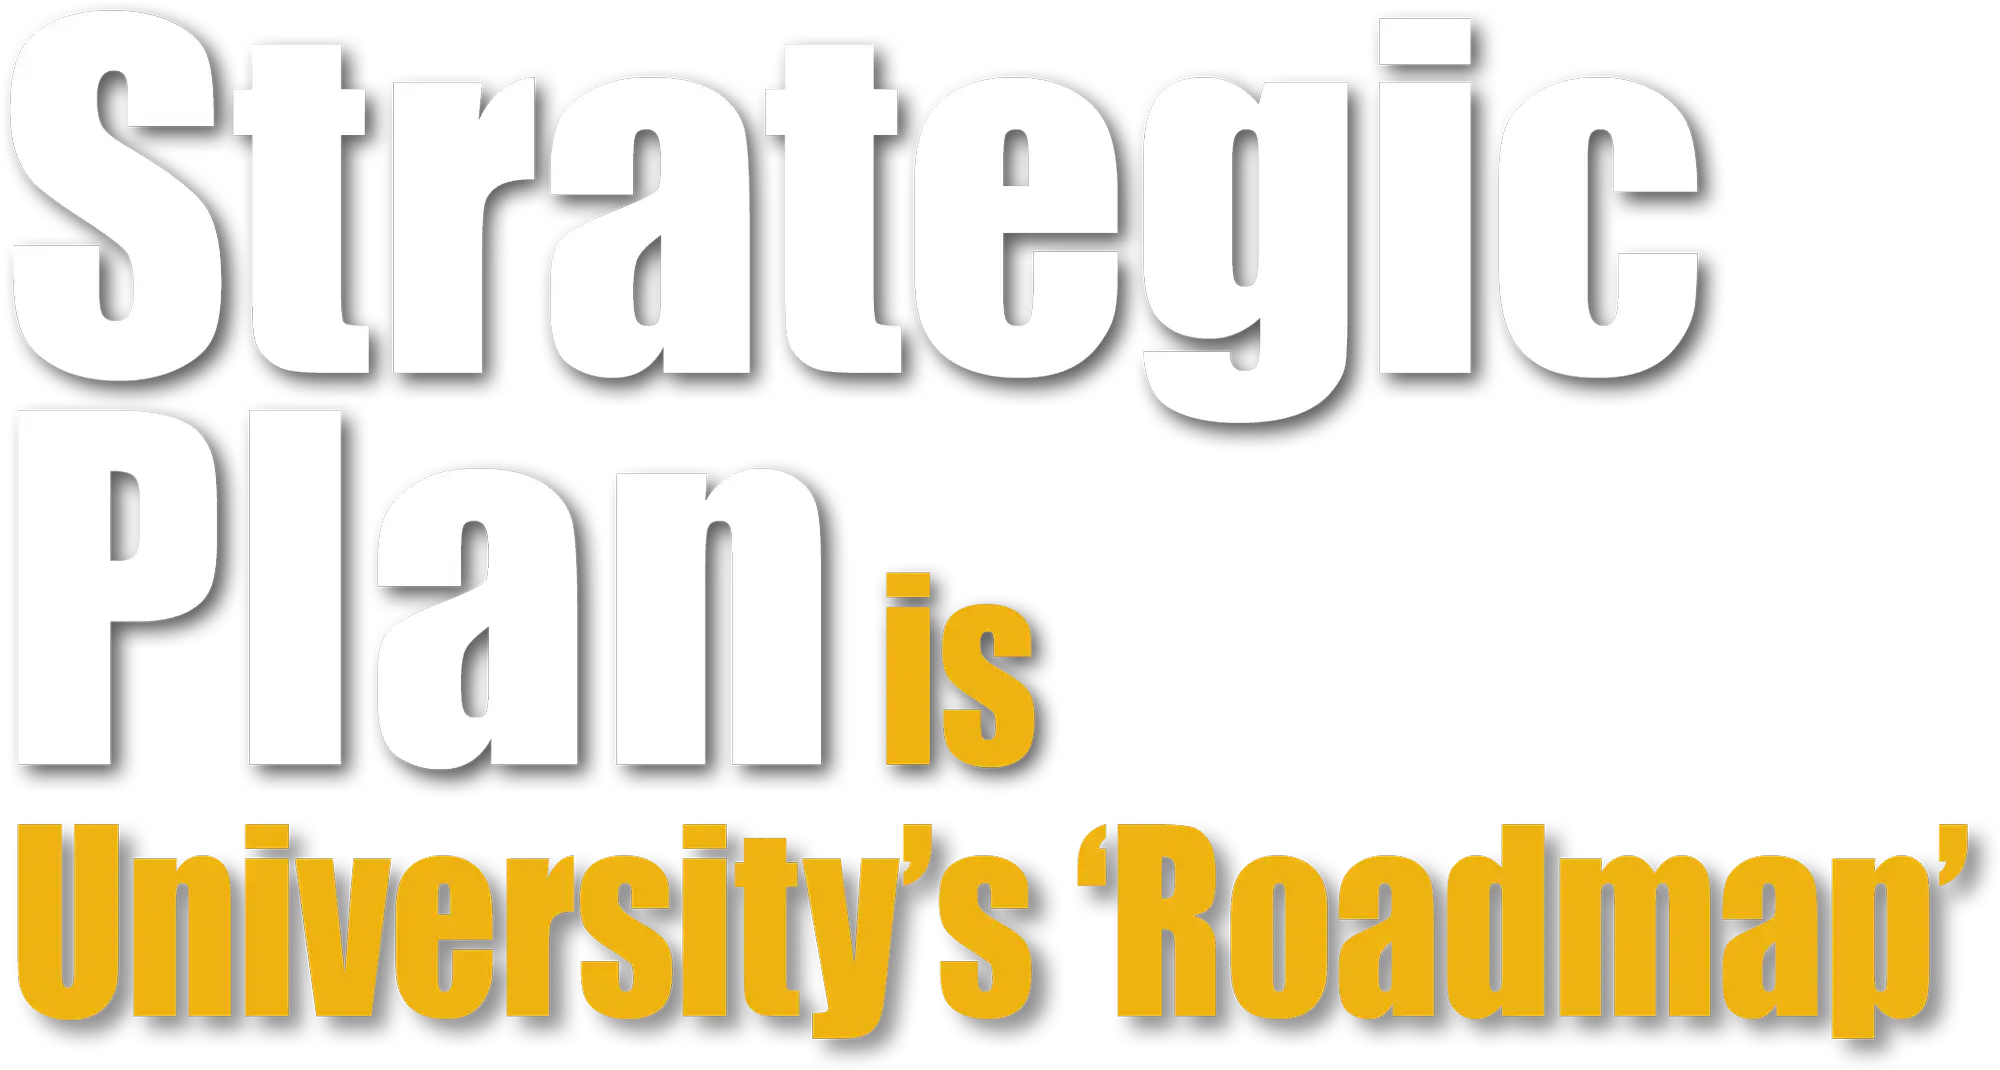 Strategic Plan is University's 'Roadmap'